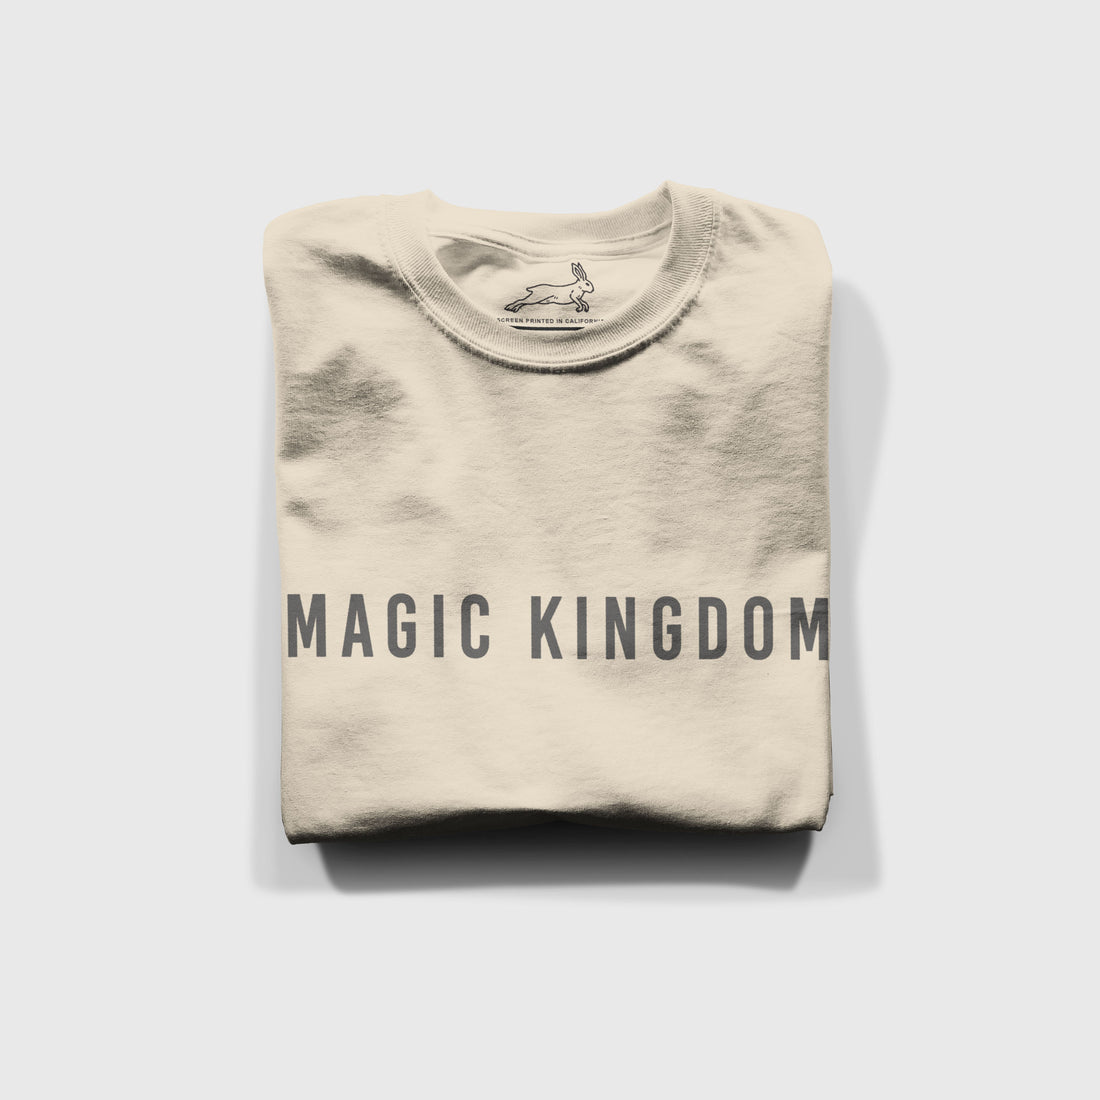 Magic Kingdom Minimalist - Sand Tee